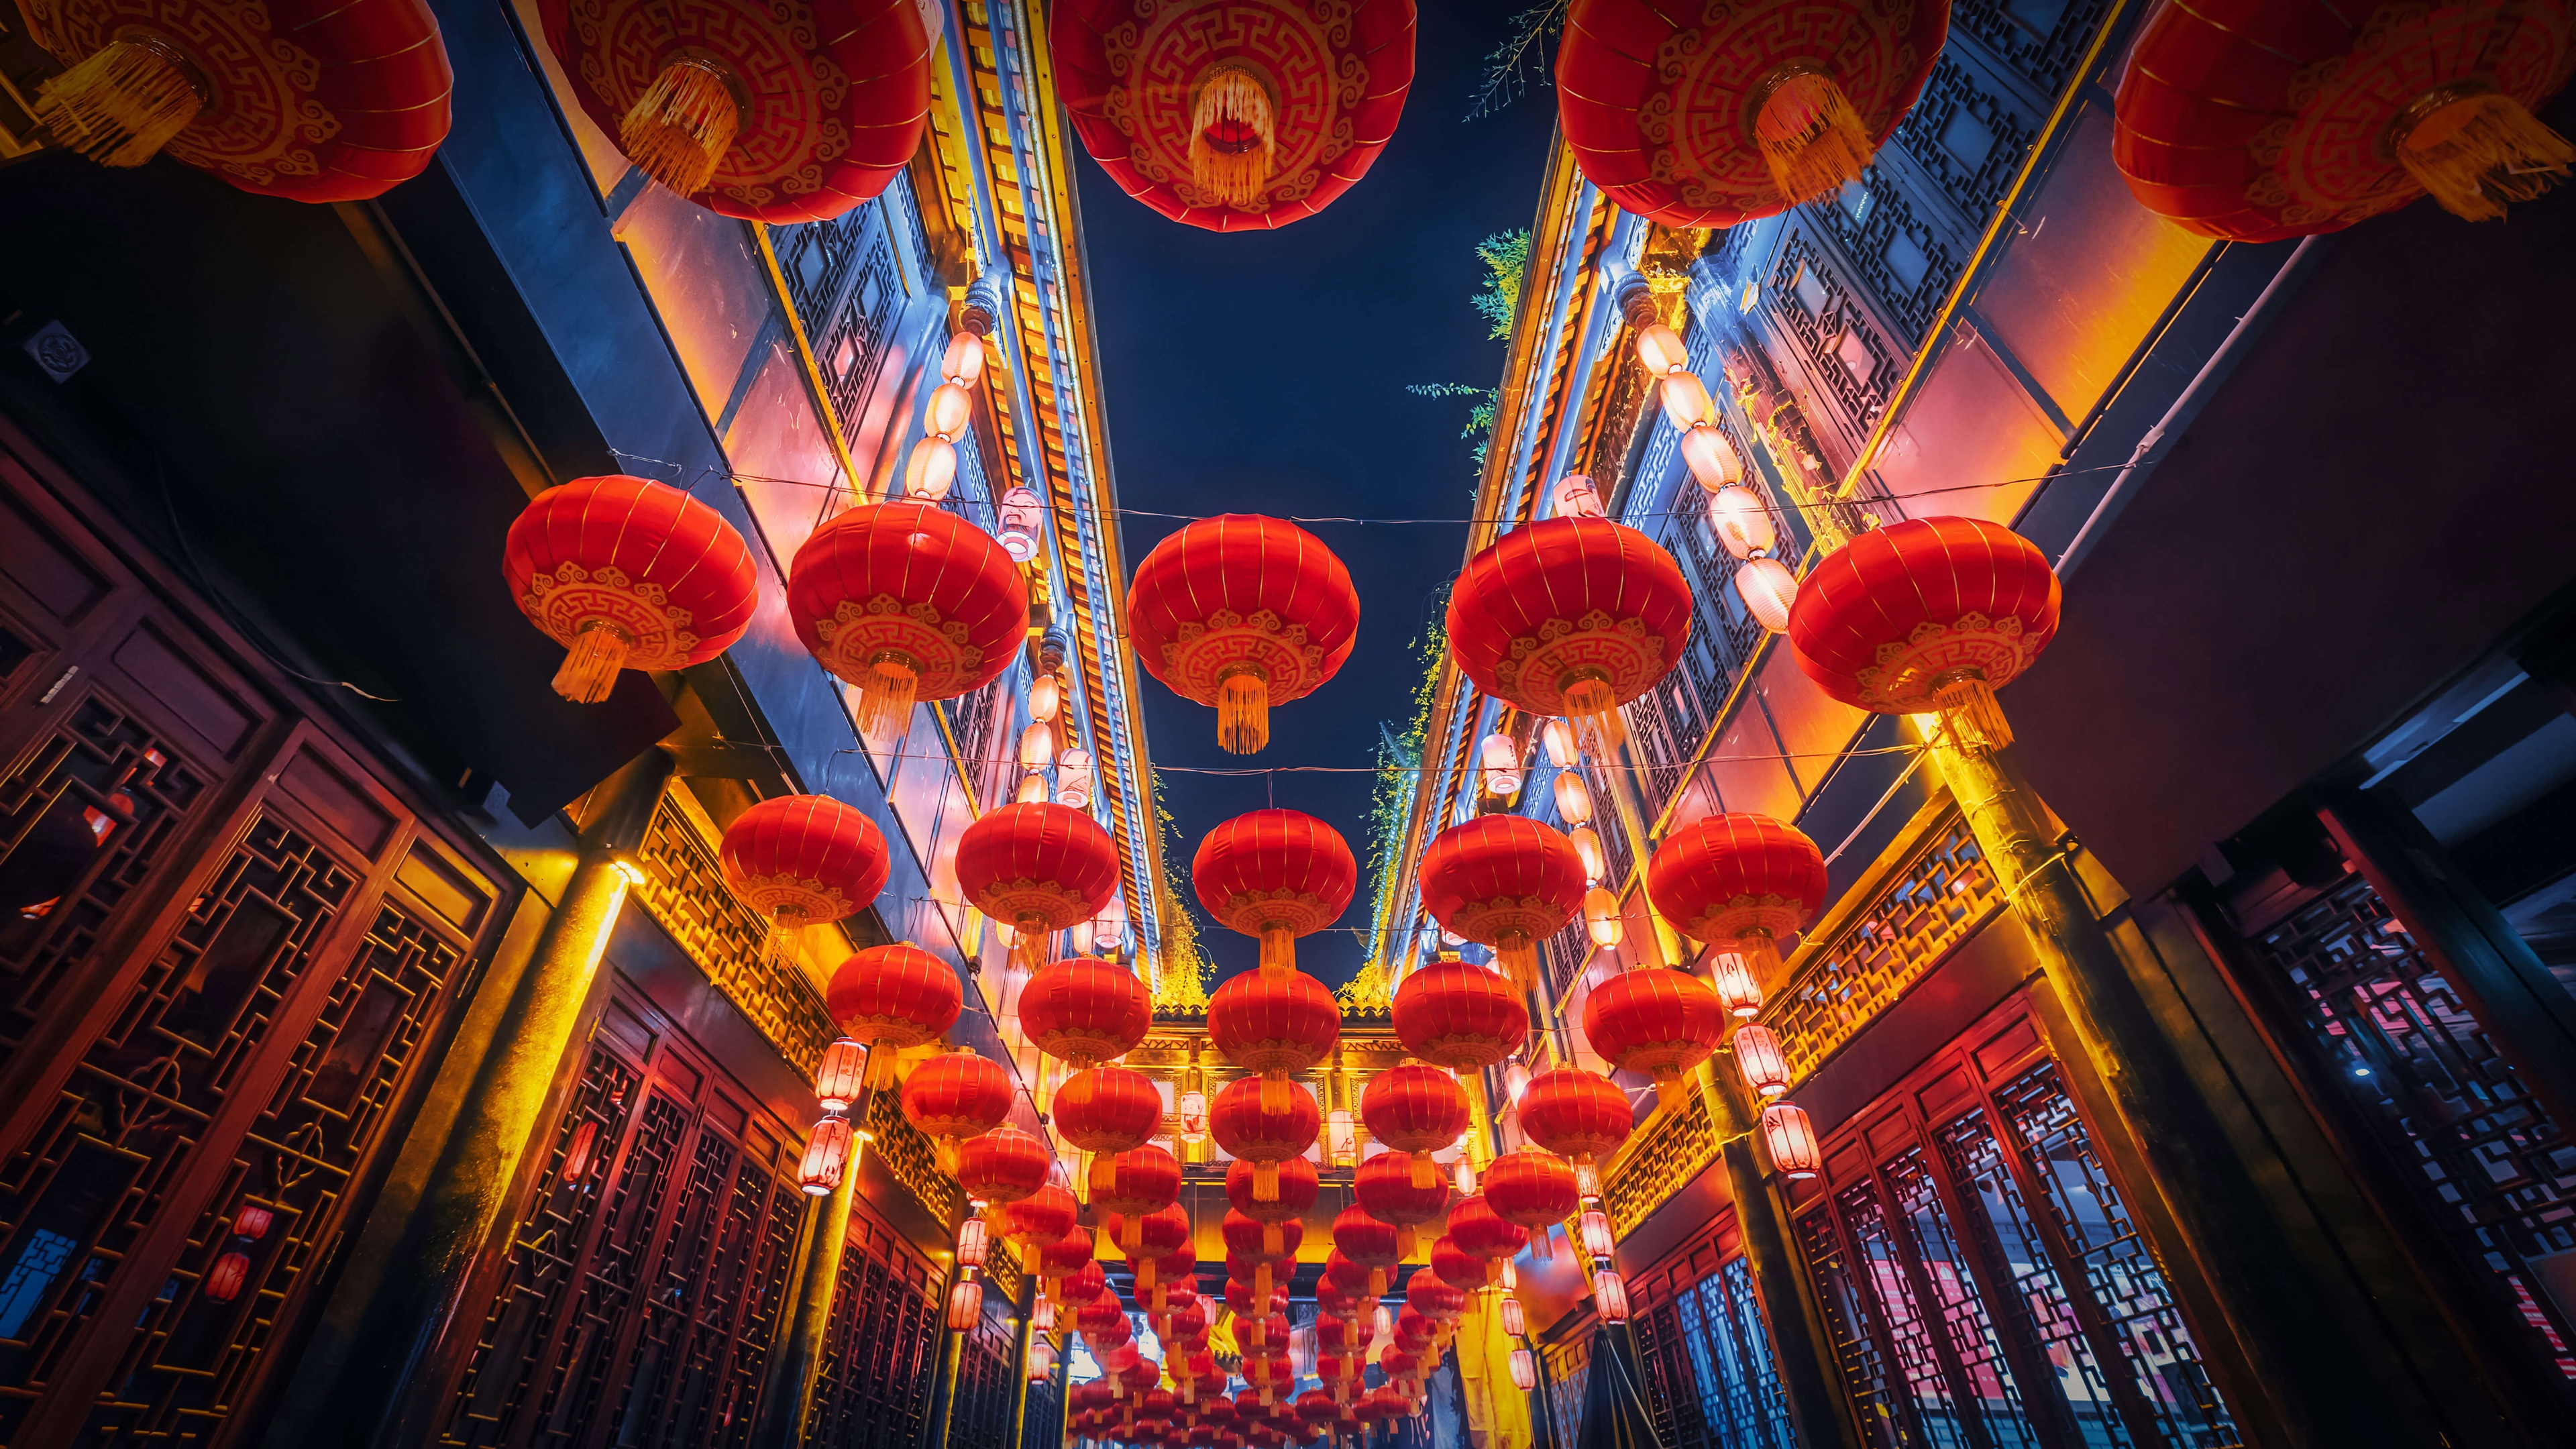 Hình nền Lễ hội đèn 4K: Lễ hội đèn là lễ hội phổ biến nhất của Trung Quốc và được tổ chức ở nhiều nơi trên thế giới. Hình nền Lễ hội đèn 4K sẽ đưa bạn đến với một thế giới đầy ánh sáng và màu sắc. Hãy thưởng thức những hình ảnh Lễ hội đèn đẹp nhất và cảm nhận vẻ đẹp của nó.